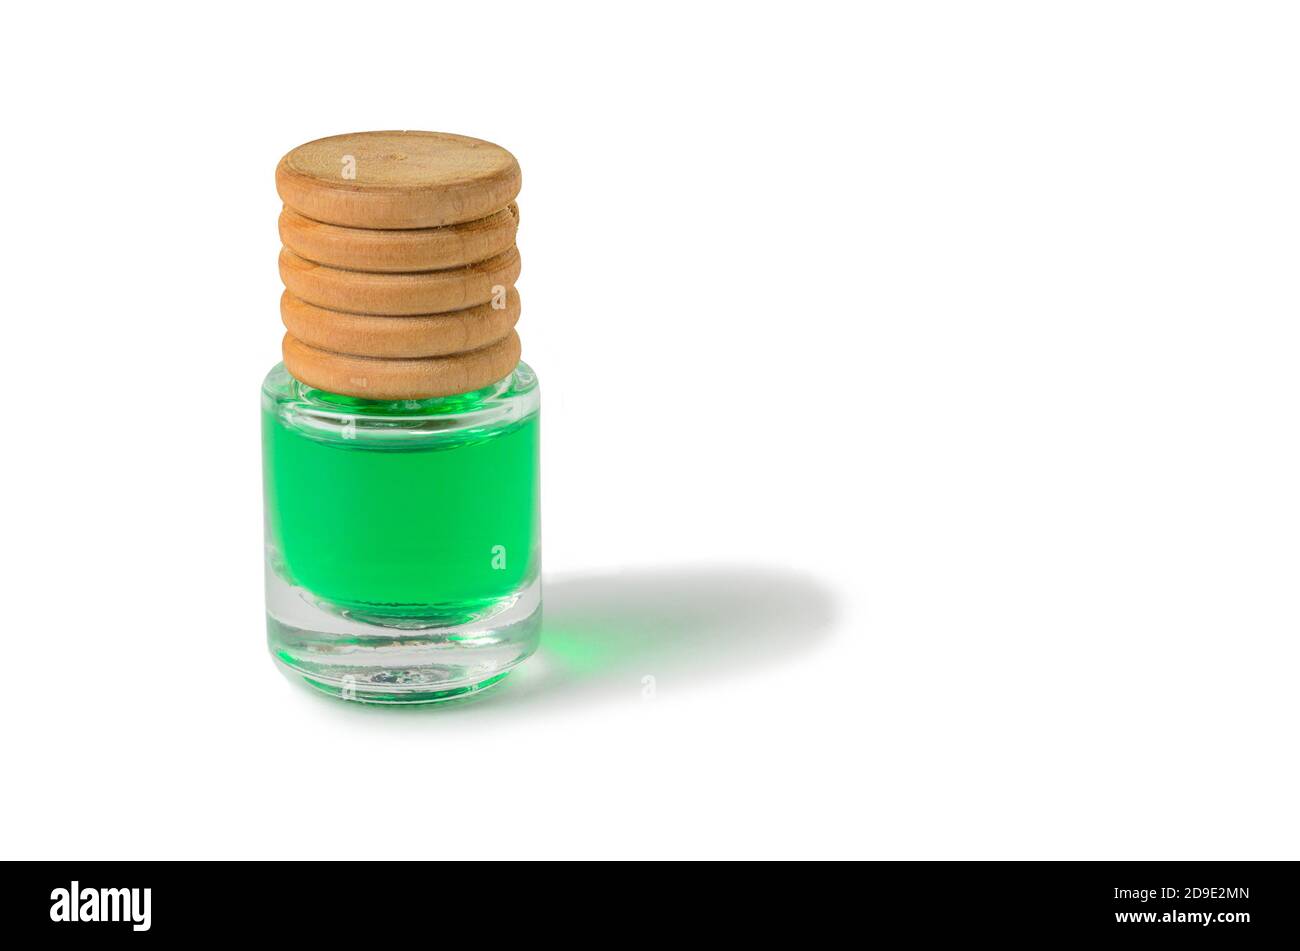 Profumo d'aria verde e di conifere in bottiglia di vetro con tappo in legno. Isolato su uno sfondo bianco con un'ombra. Foto Stock